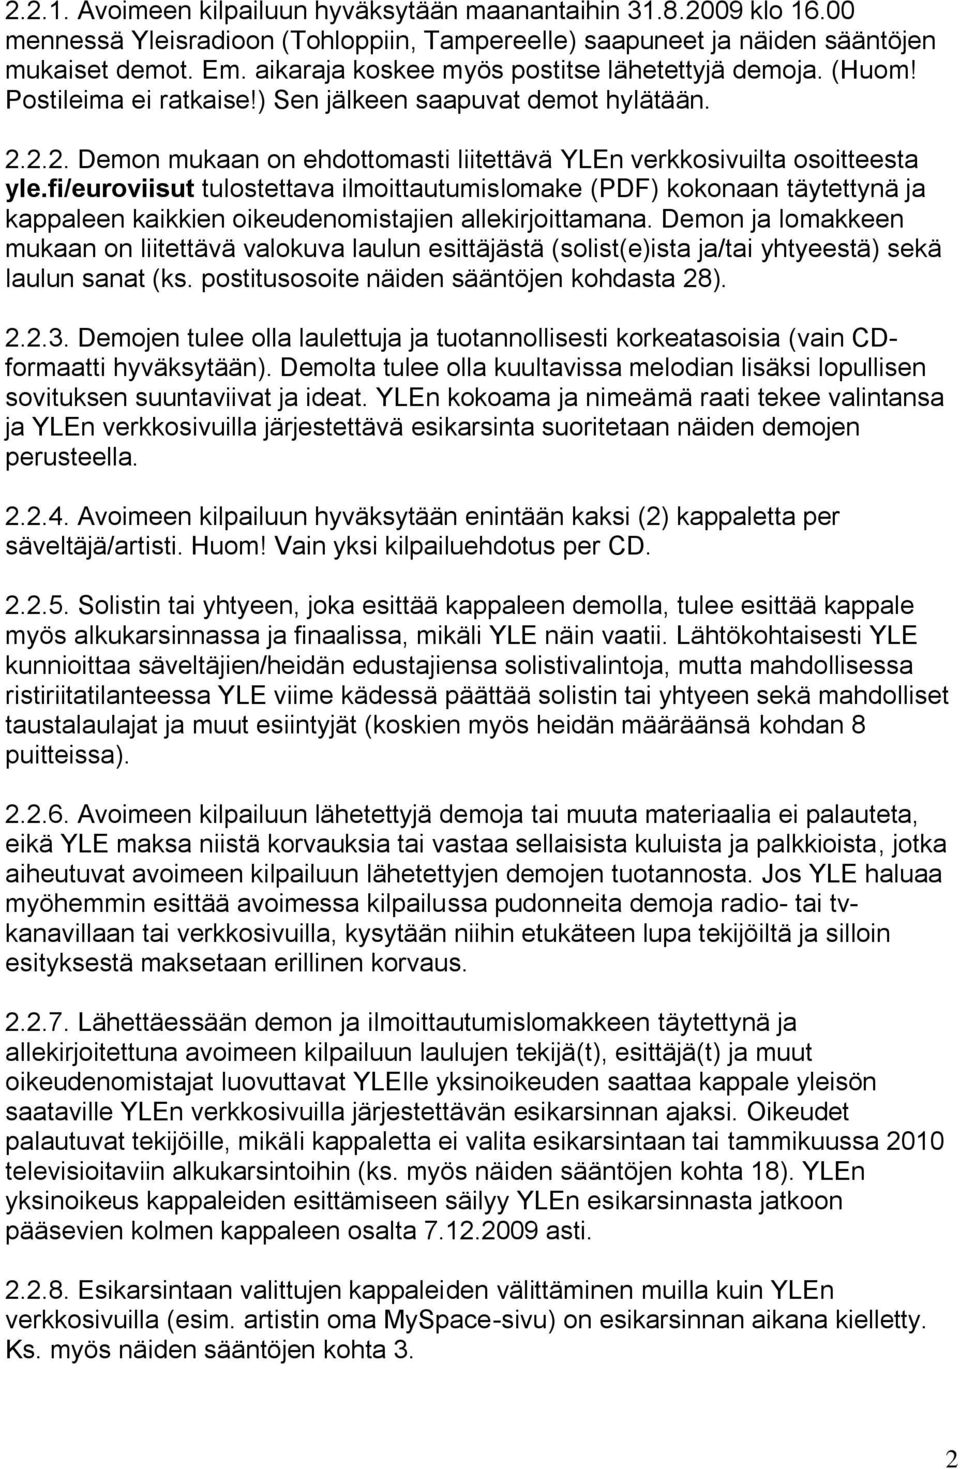 fi/euroviisut tulostettava ilmoittautumislomake (PDF) kokonaan täytettynä ja kappaleen kaikkien oikeudenomistajien allekirjoittamana.